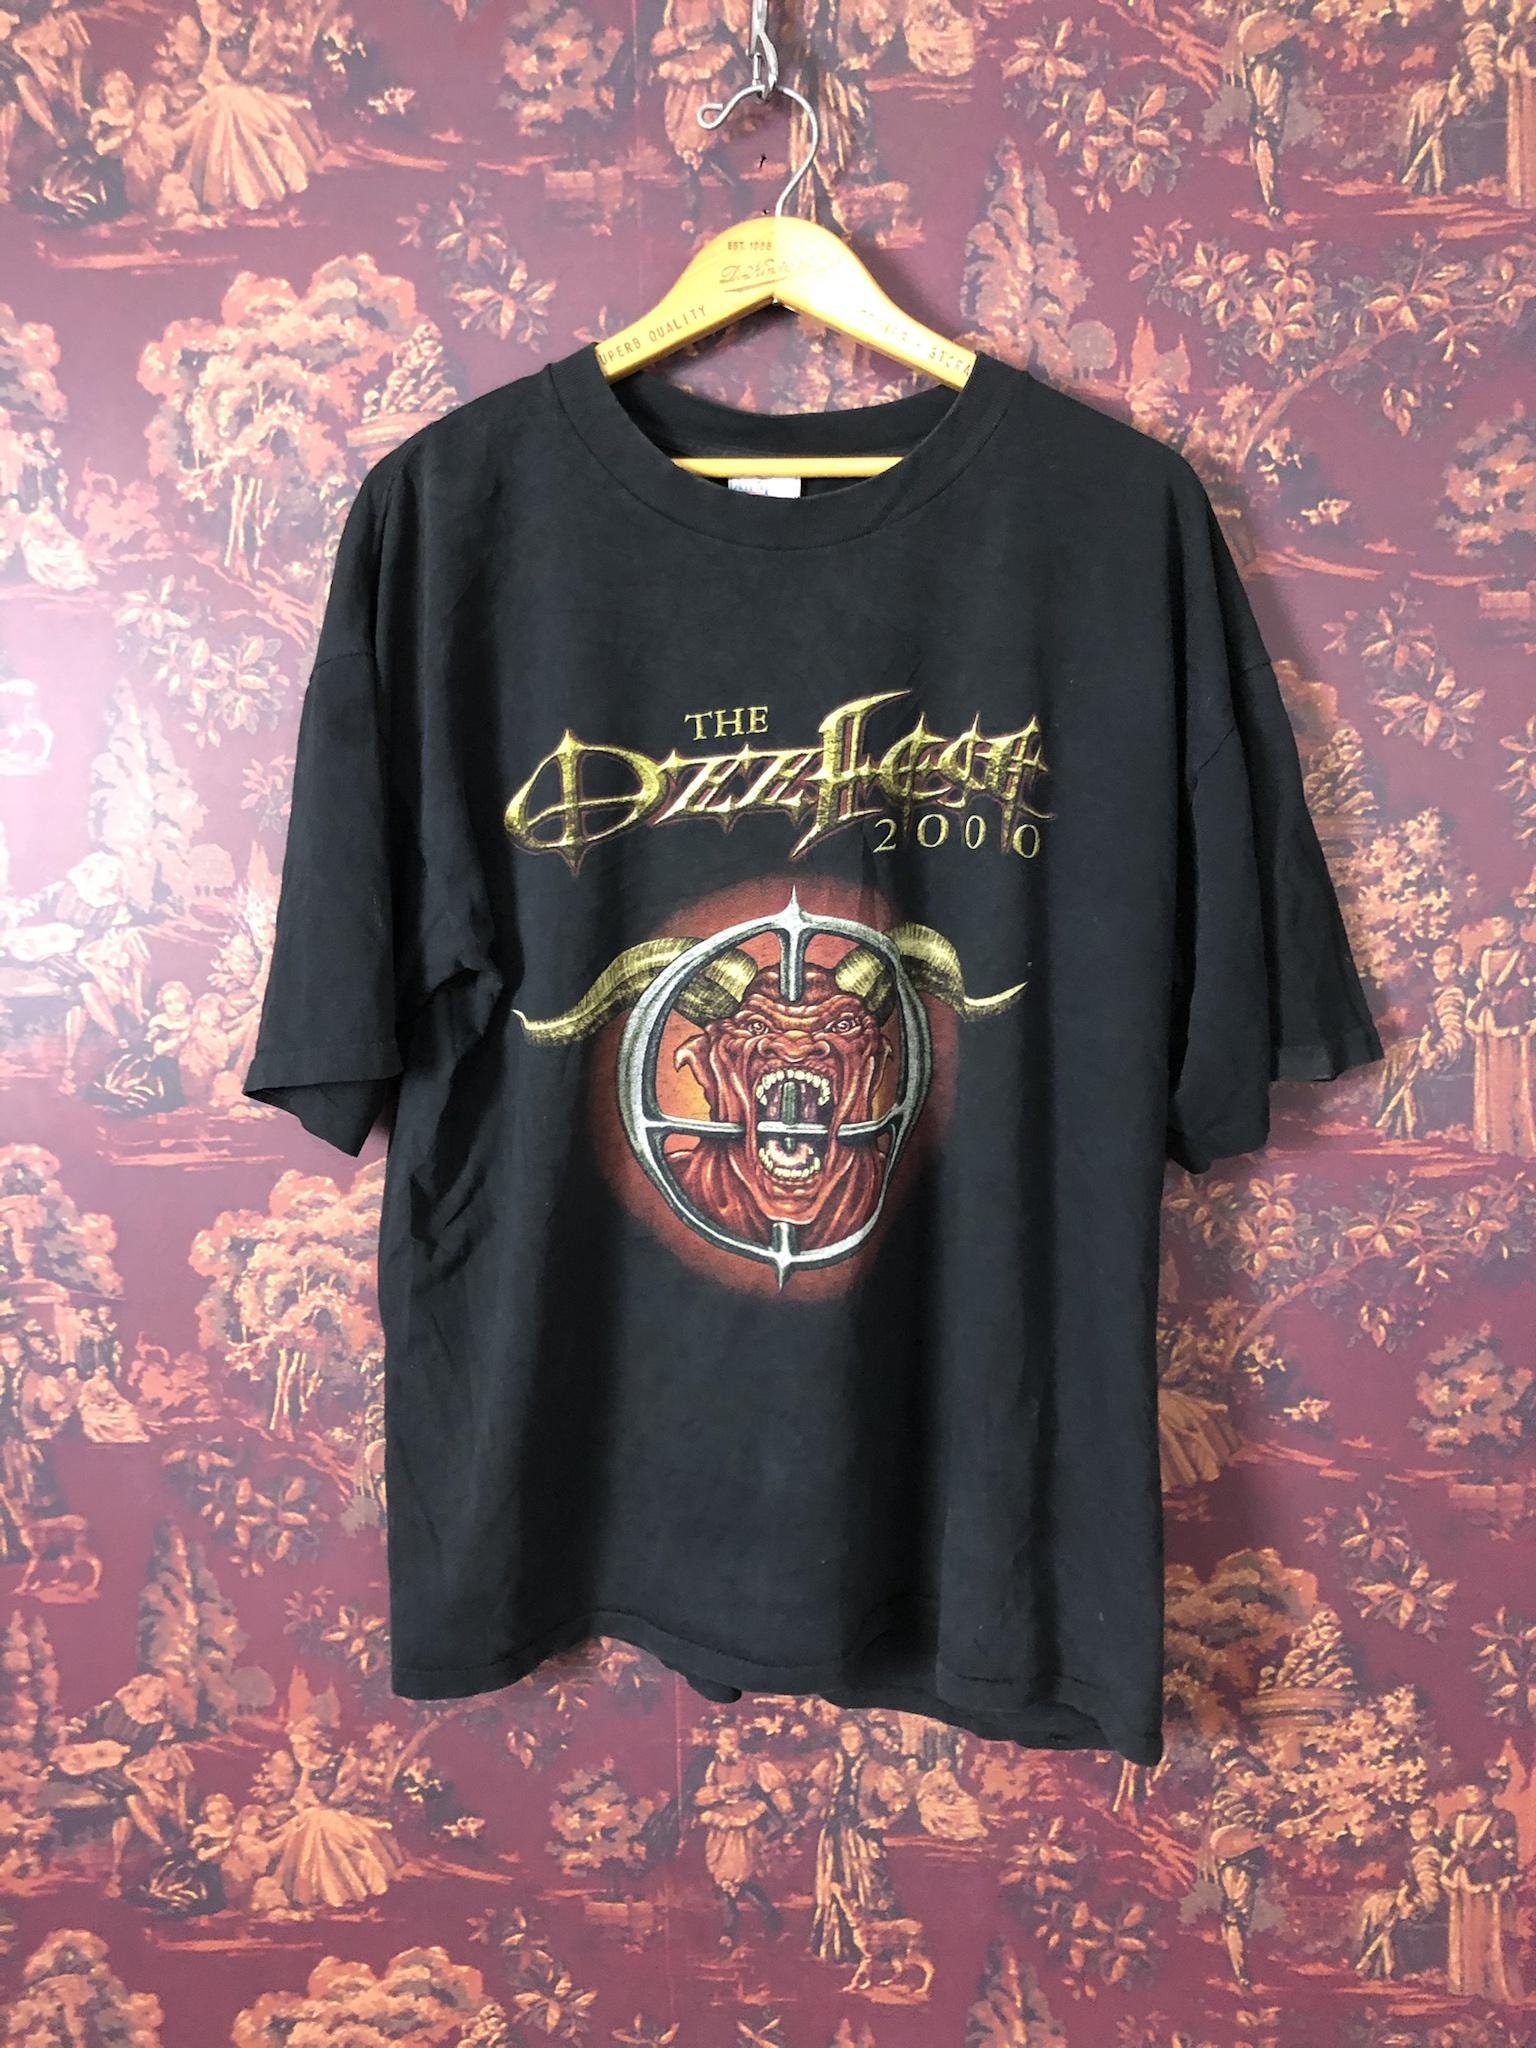 OzzFest 2000 Tour T-shirt | Etsy